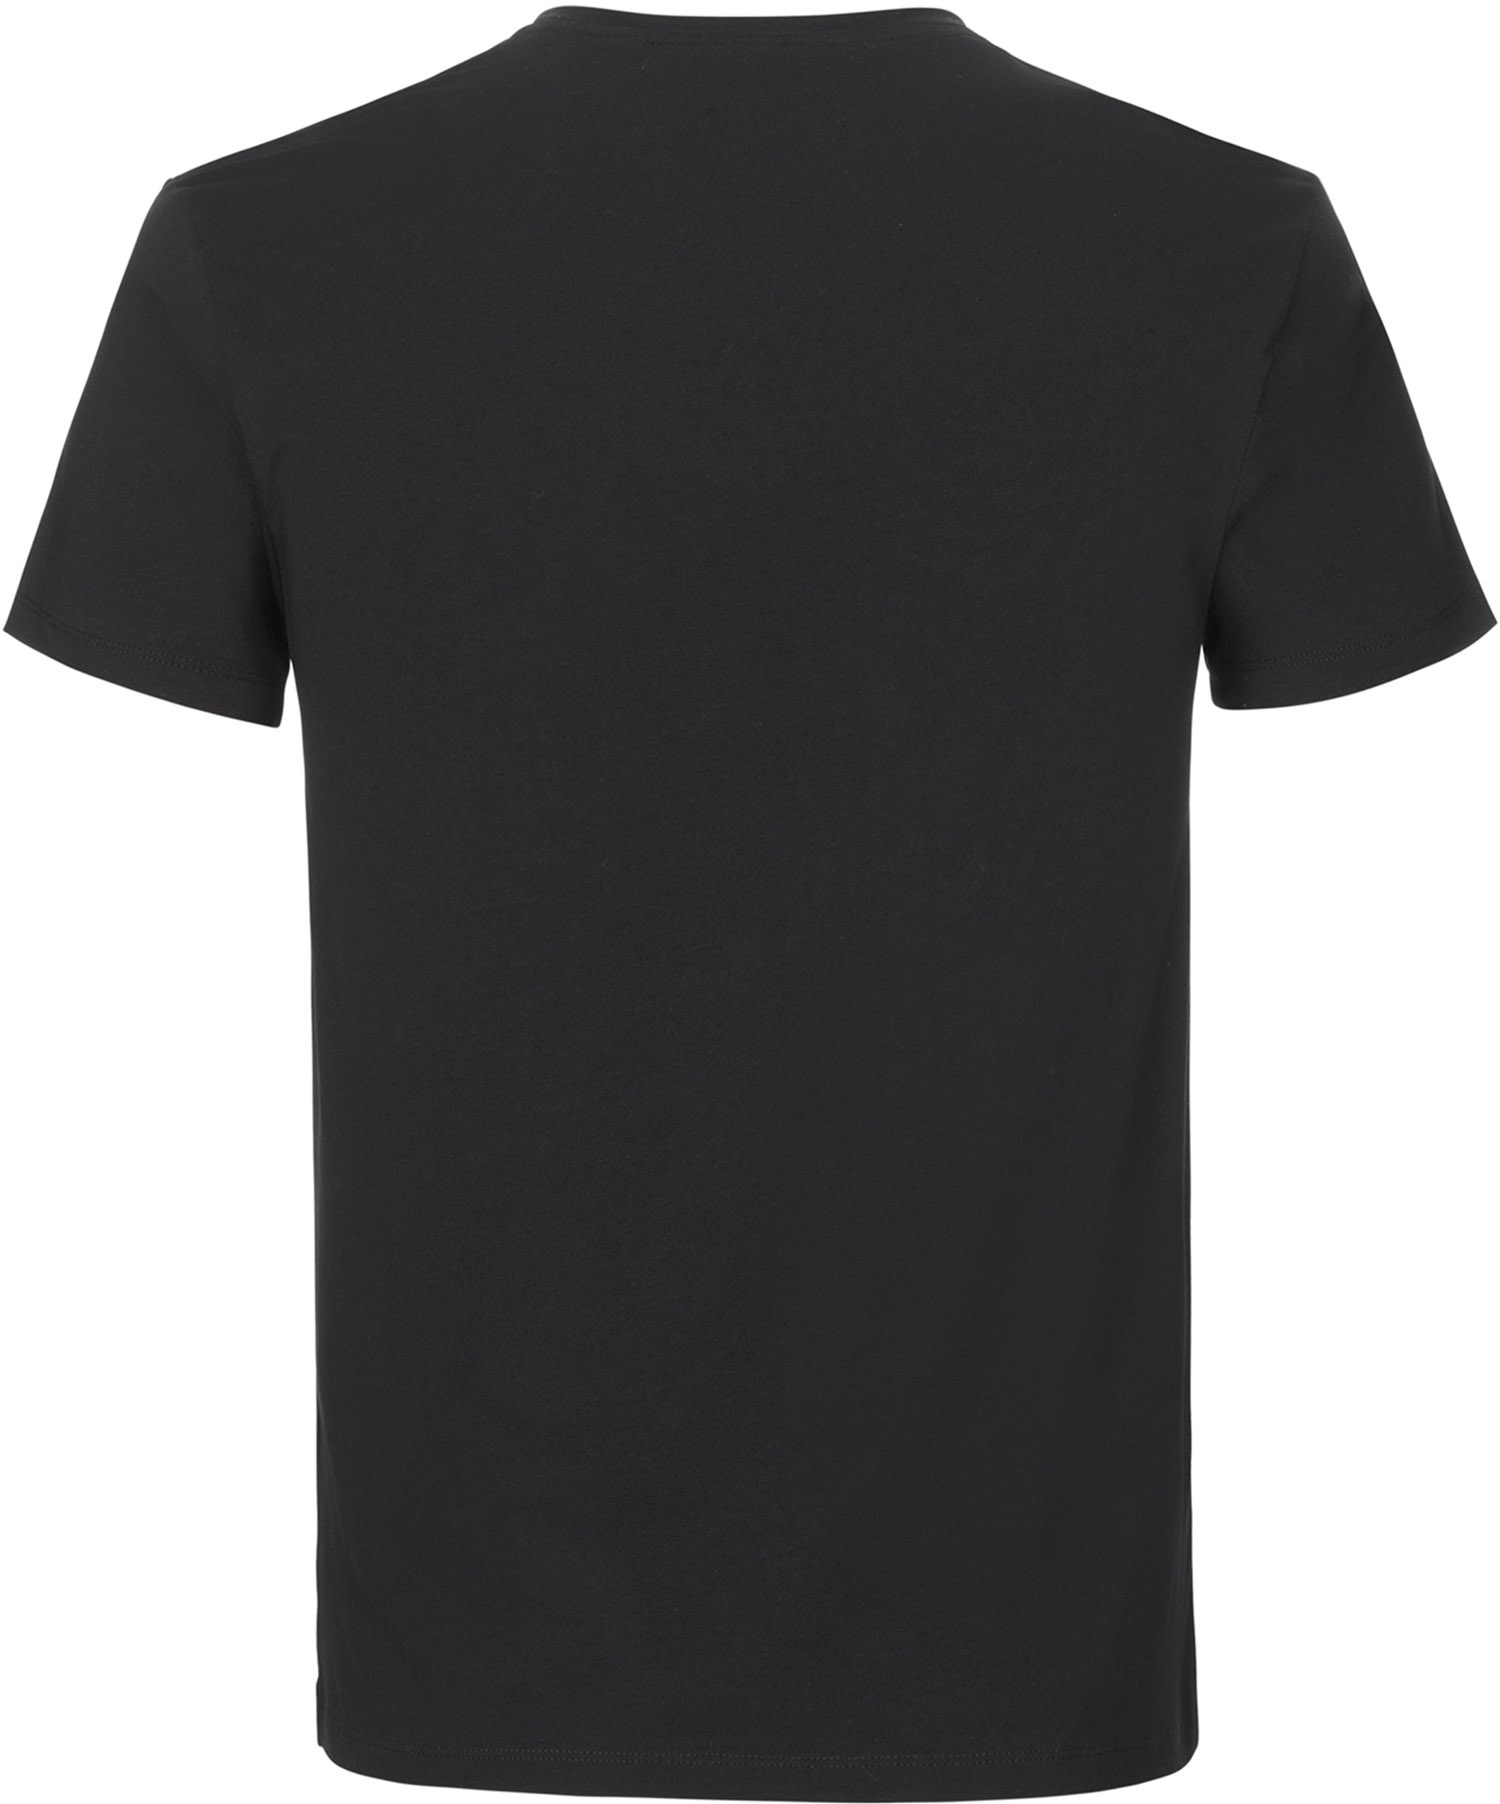 Beklædning - Merchandise - GripGrab Racing Stripe Kortærmet Økologisk Bomulds-T-shirt - Sort